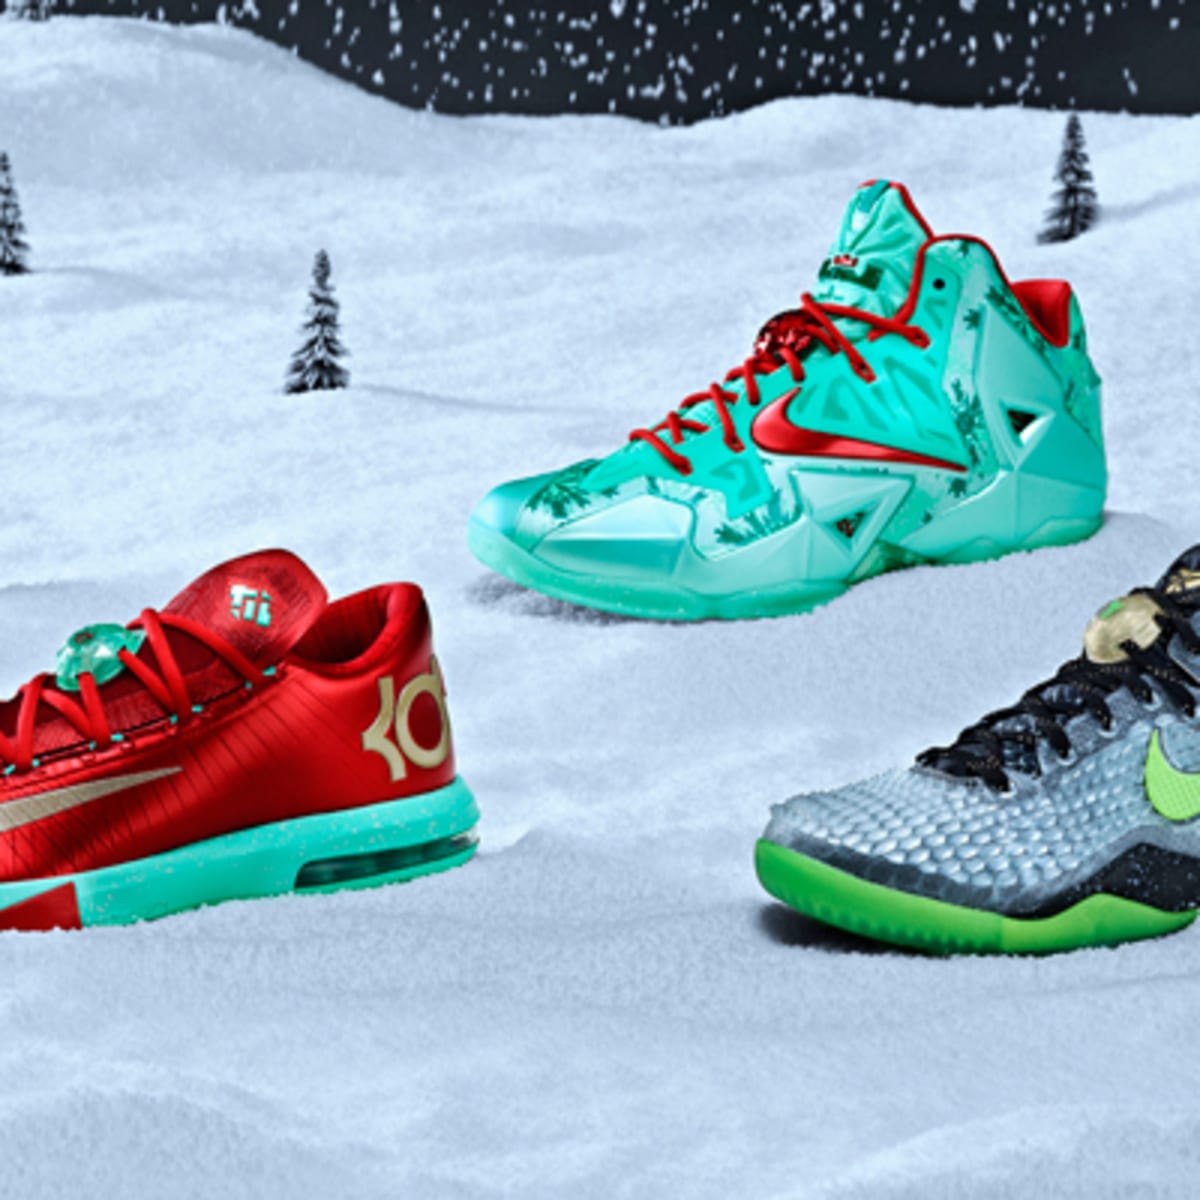 Nike Unveils LeBron James' Latest Signature Shoe